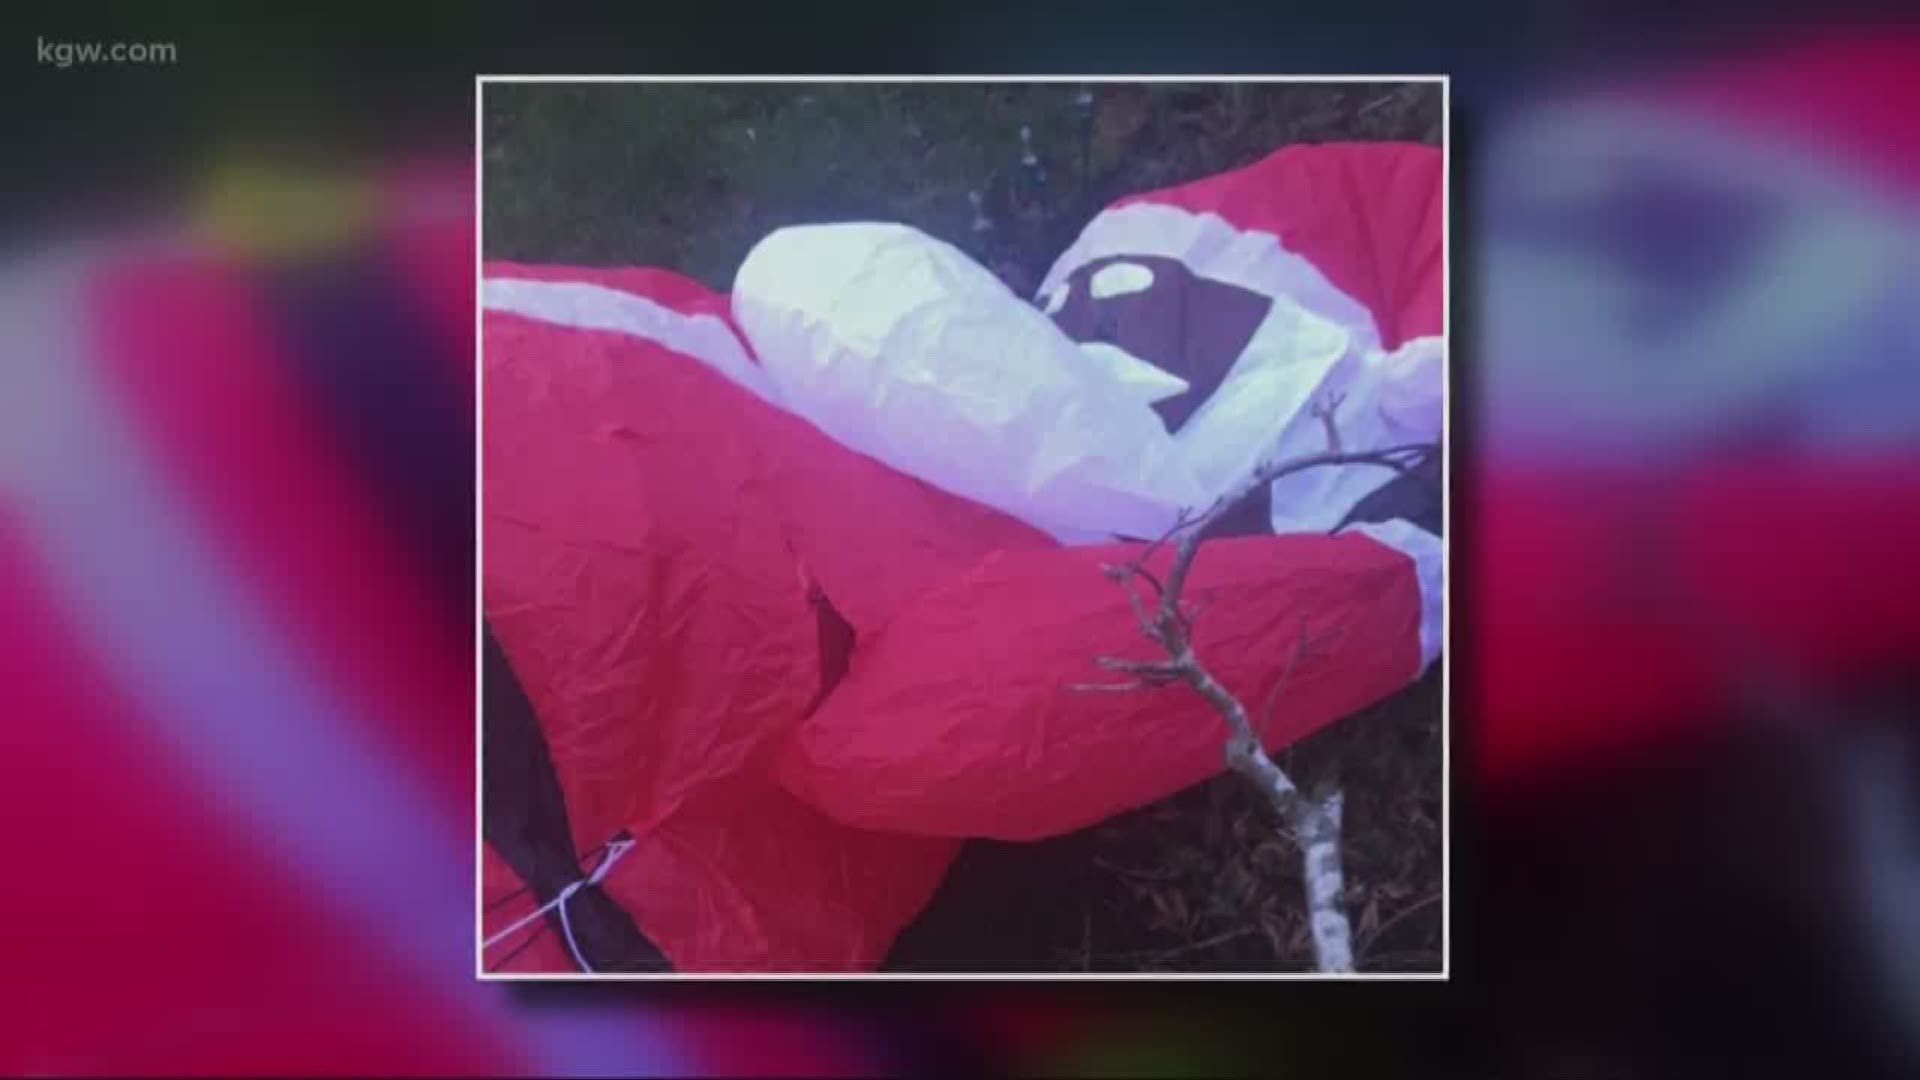 Black Santa decoration slashed in Washington County